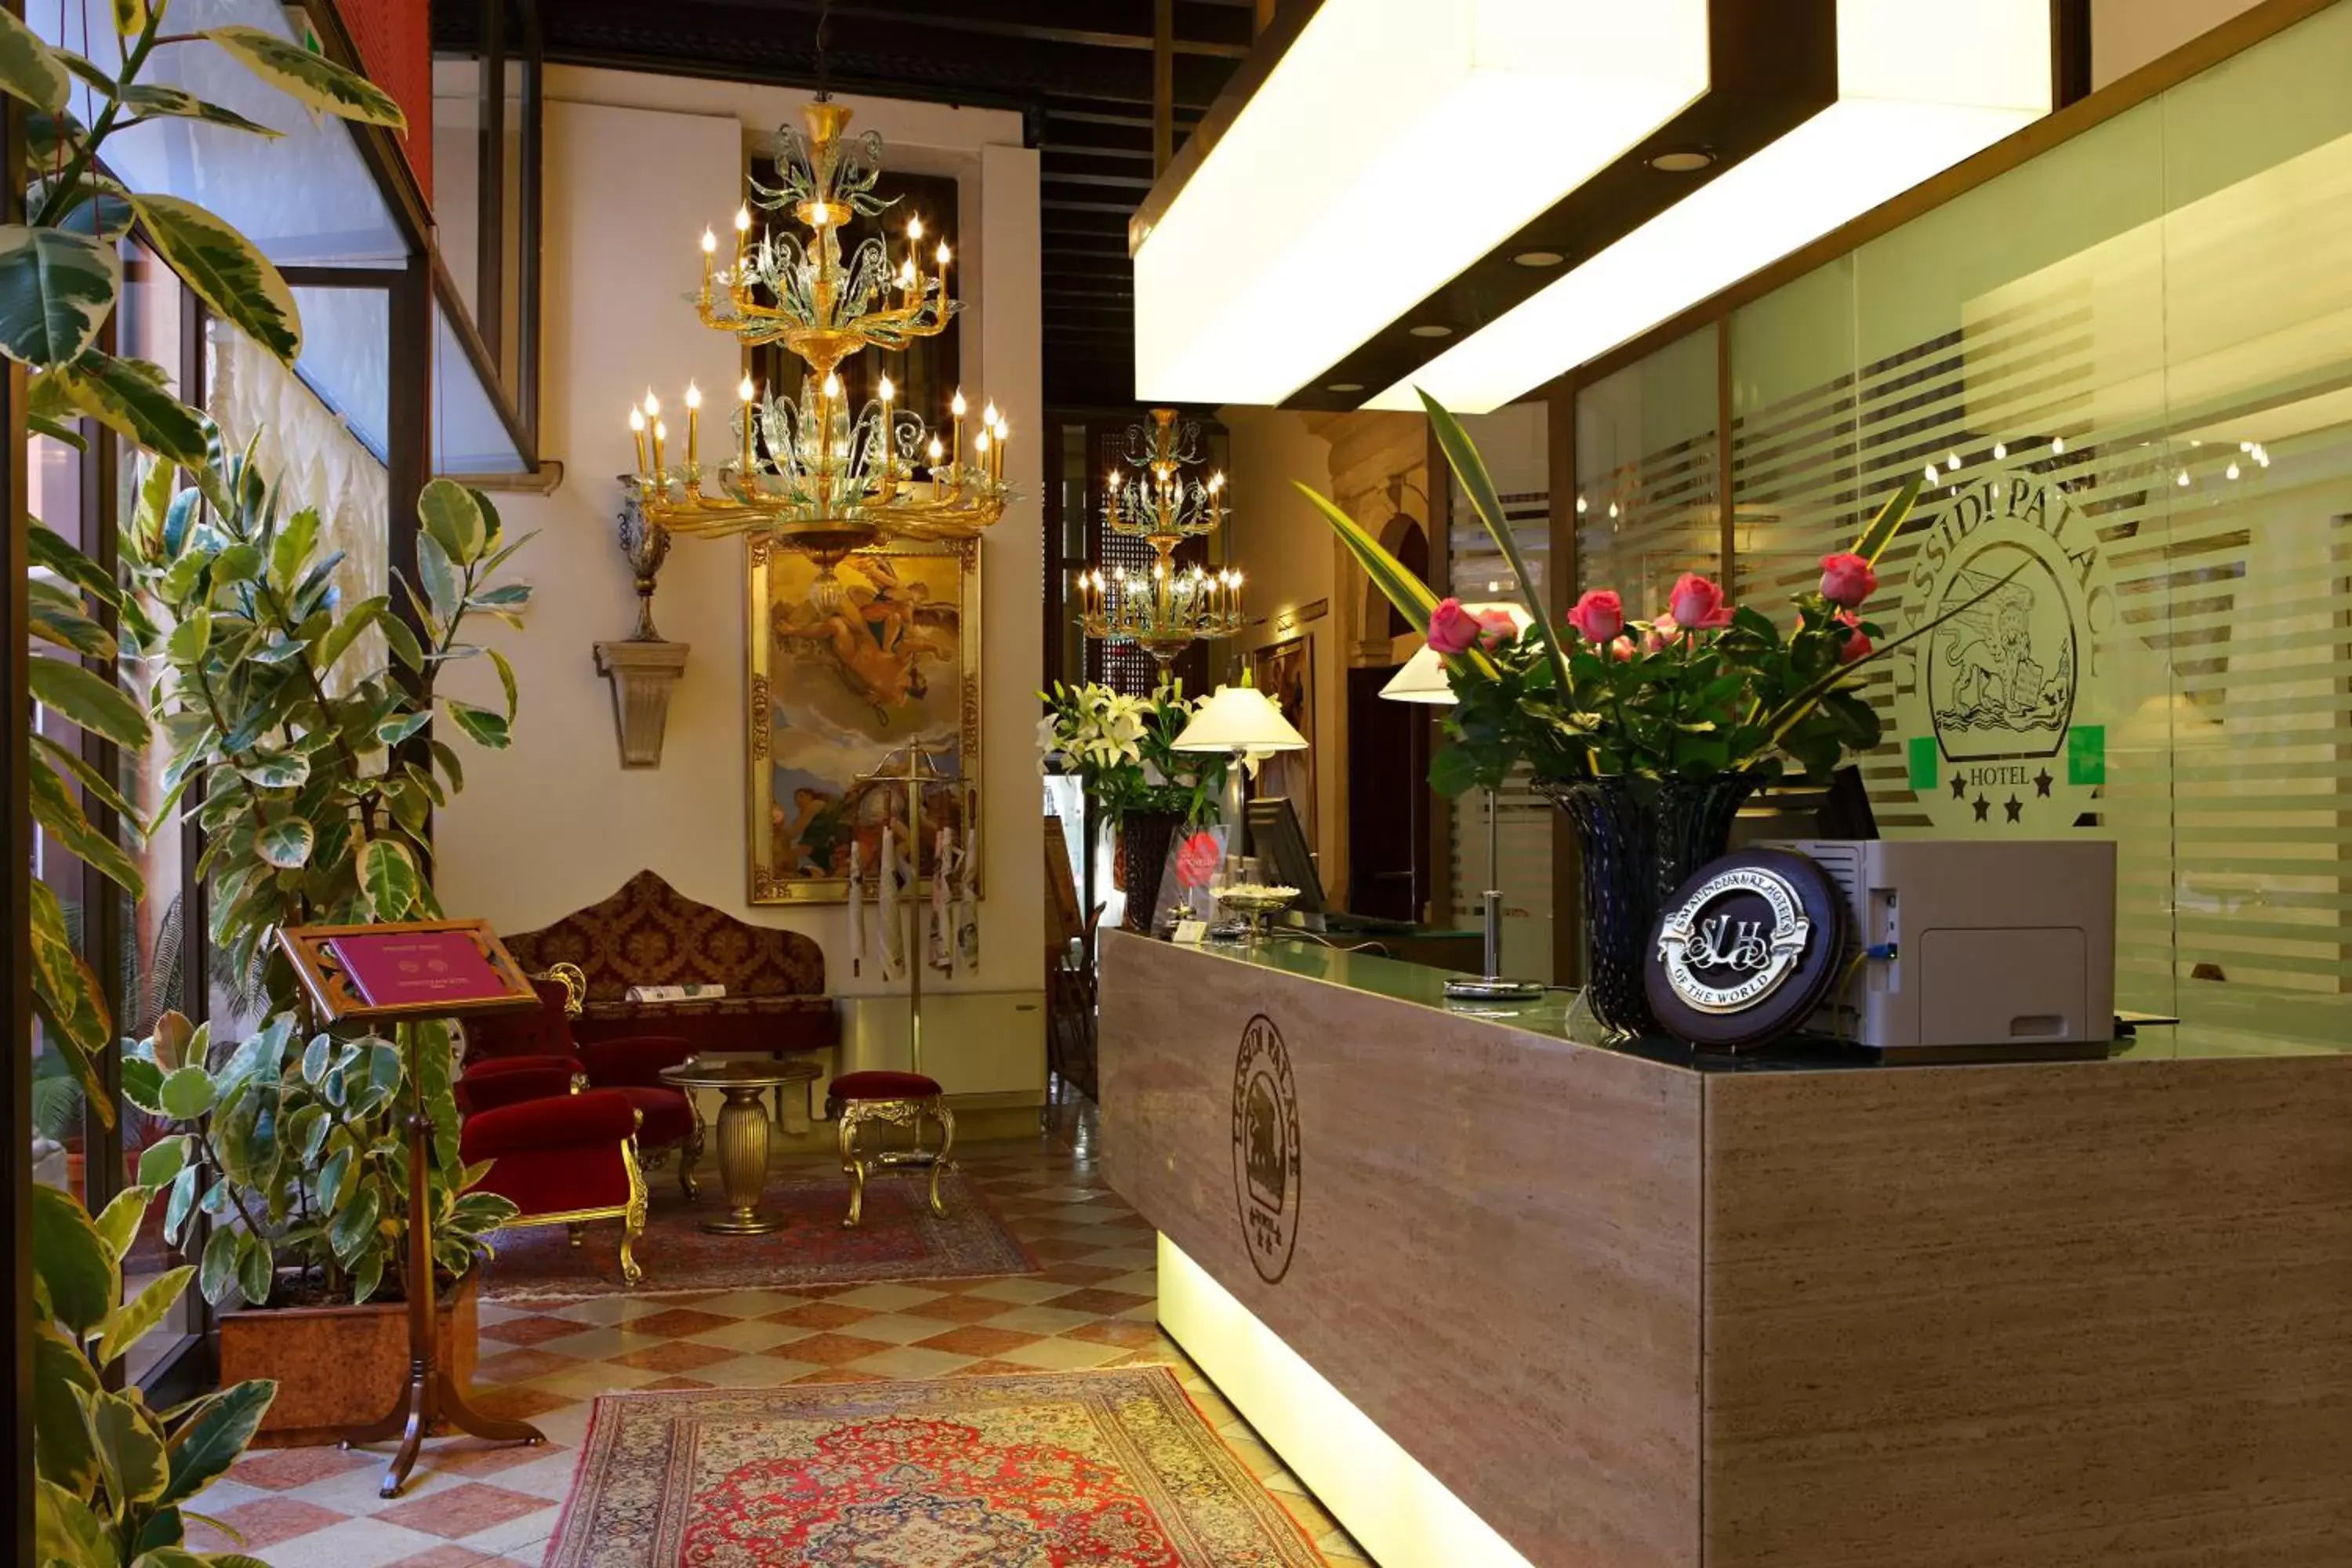 Lobby or reception, Lobby/Reception in Hotel Liassidi Palace